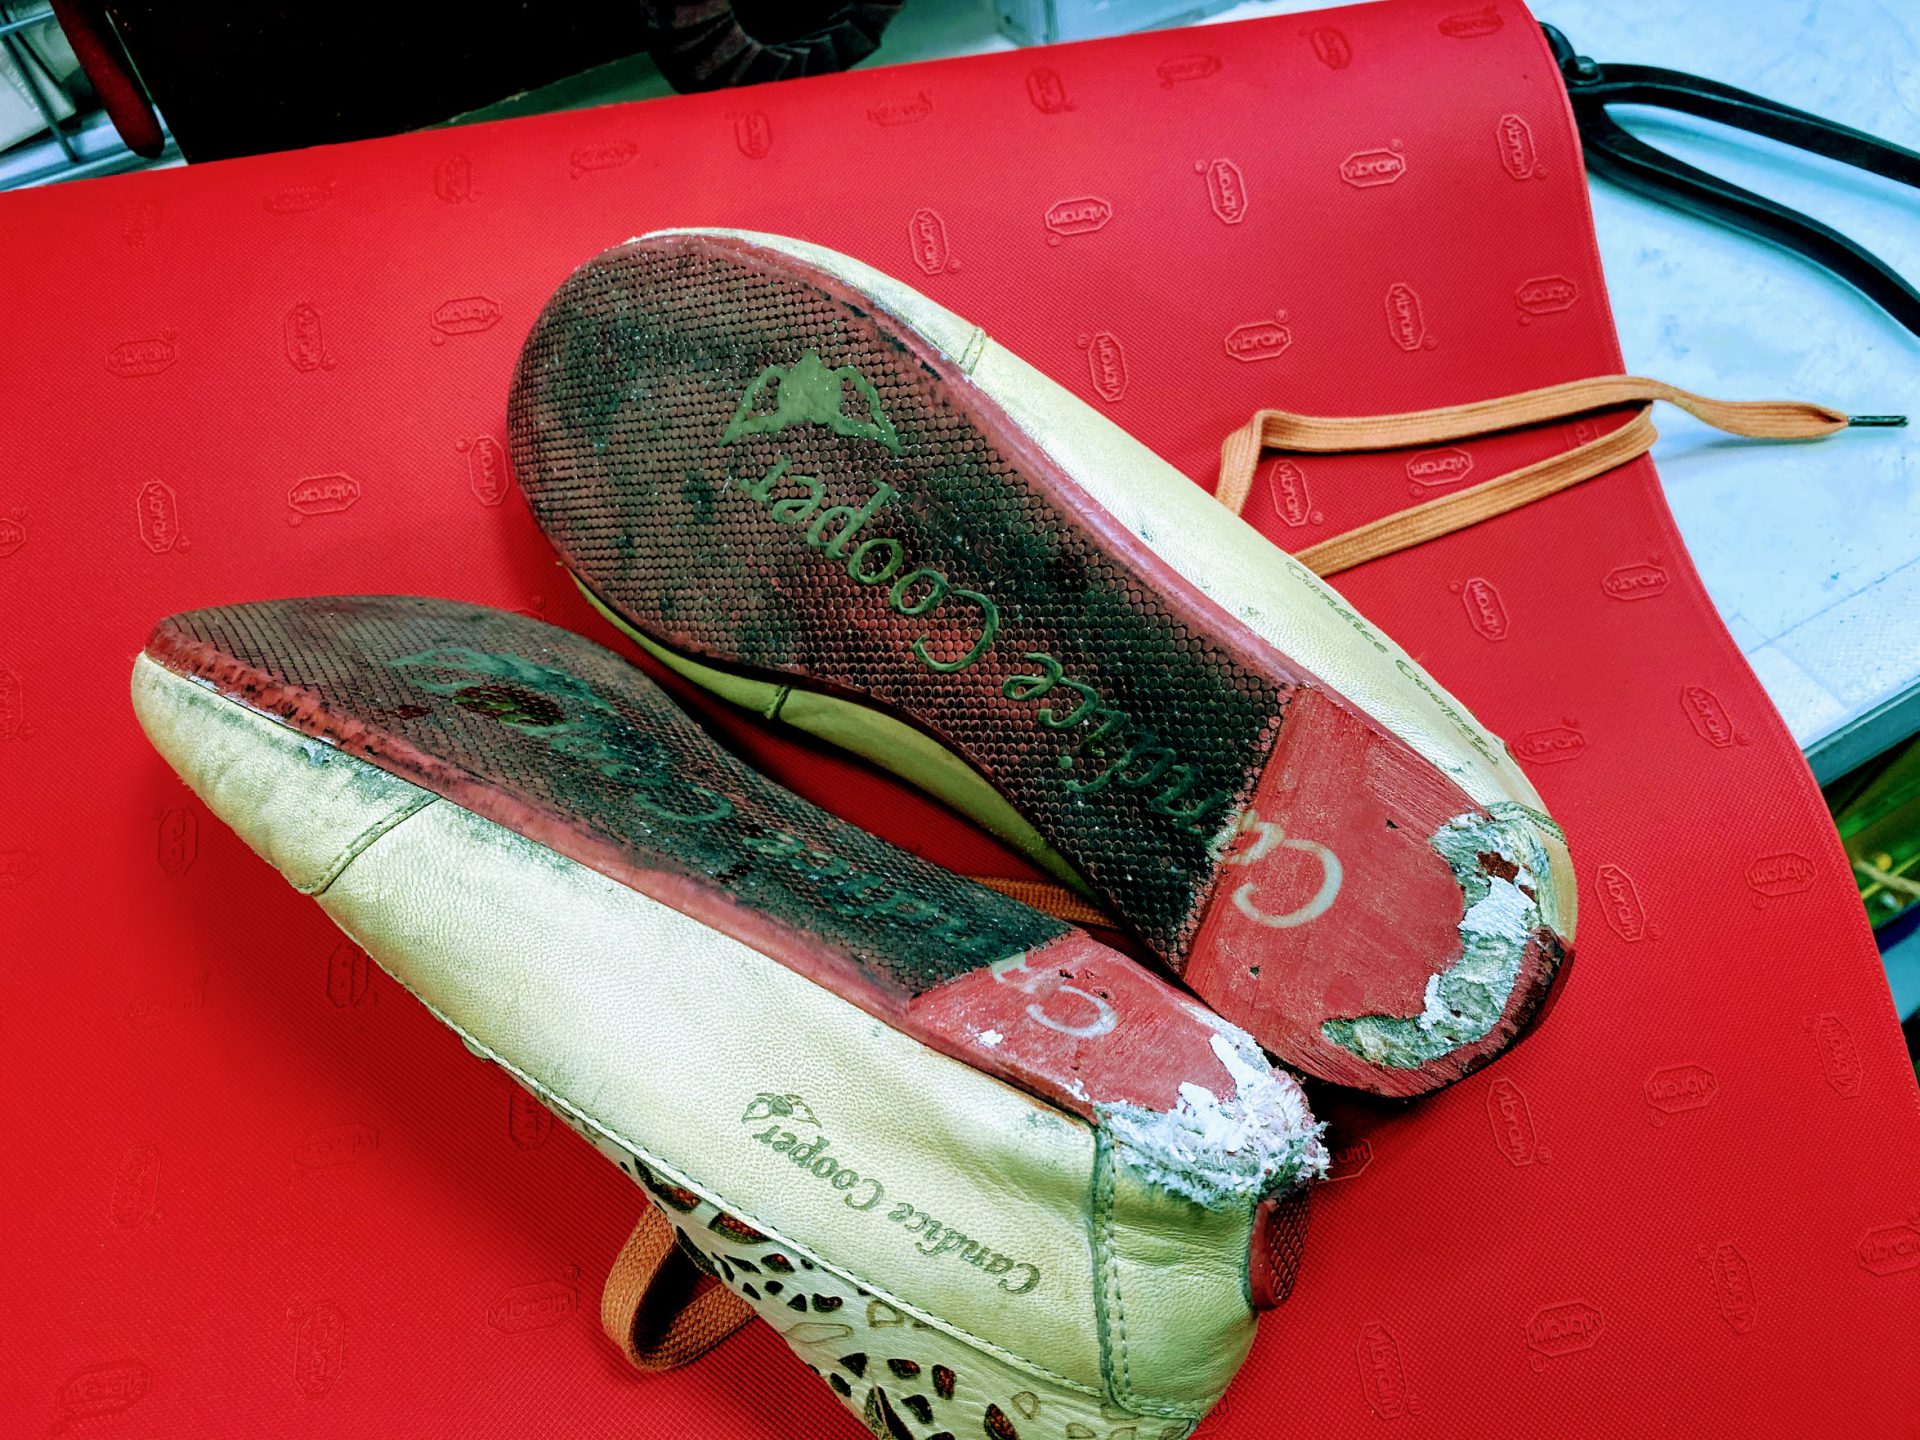 靴修理 赤い靴底のスニーカーをオールソール修理しました Shoes Kuratomi 大濠本店 Blog